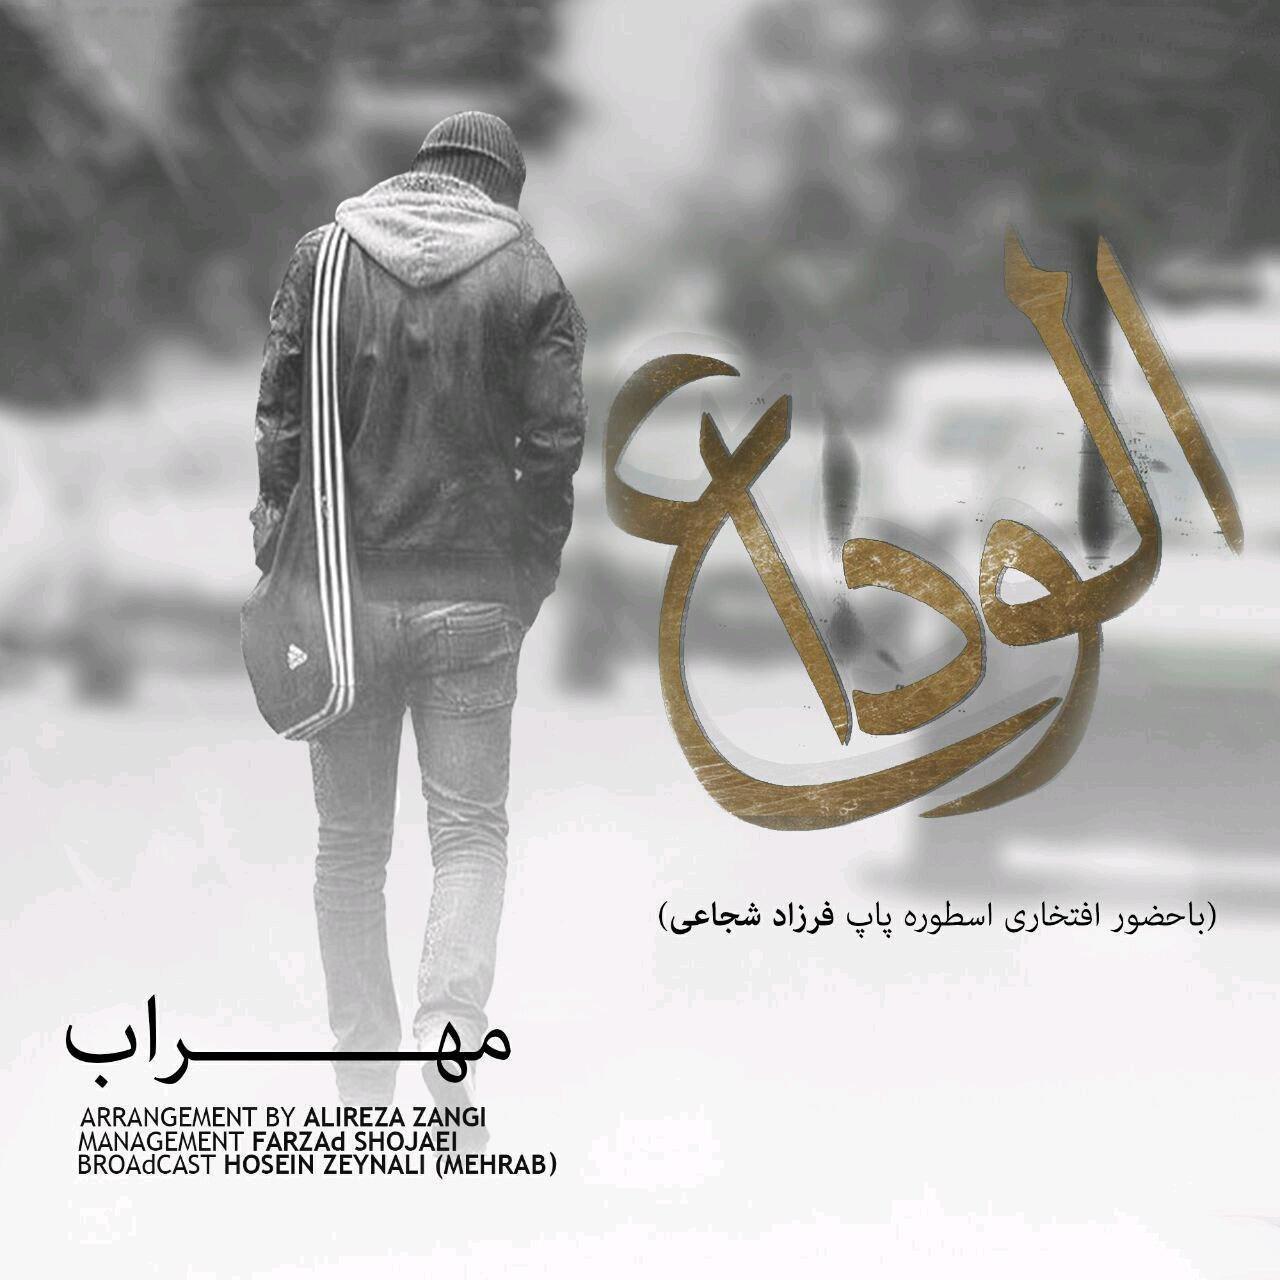  دانلود آهنگ جدید مهراب و فرزاد شجاعی - الوداع | Download New Music By Mehrab - Alveda (feat. Farzad Shojaei)